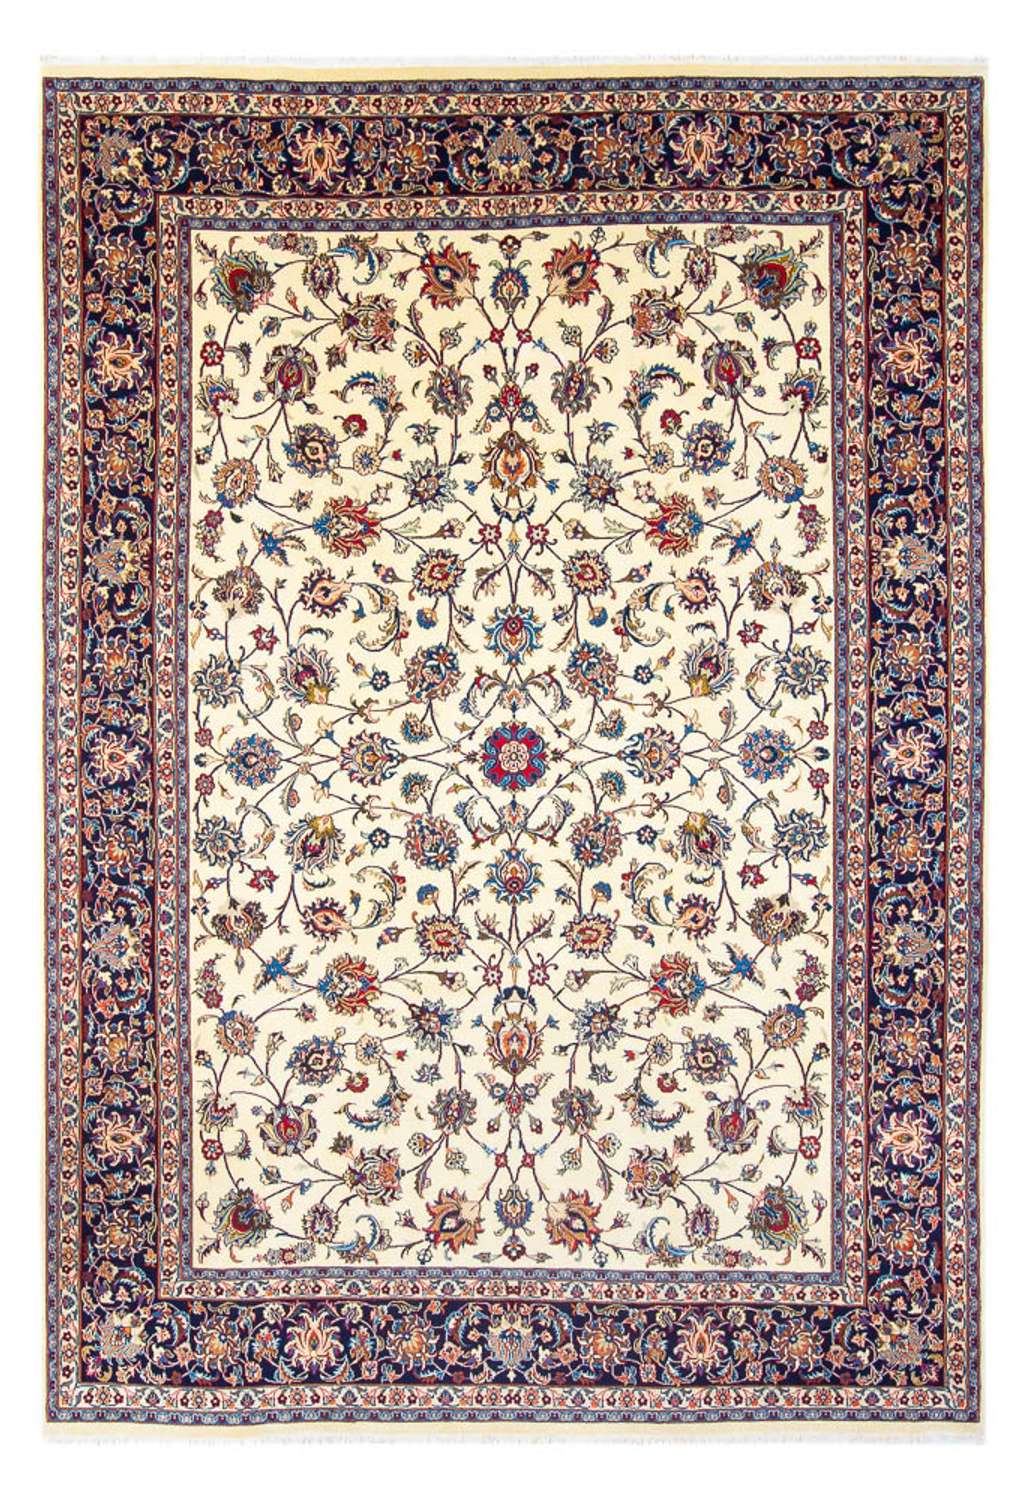 Alfombra persa - Clásica - 342 x 248 cm - crema